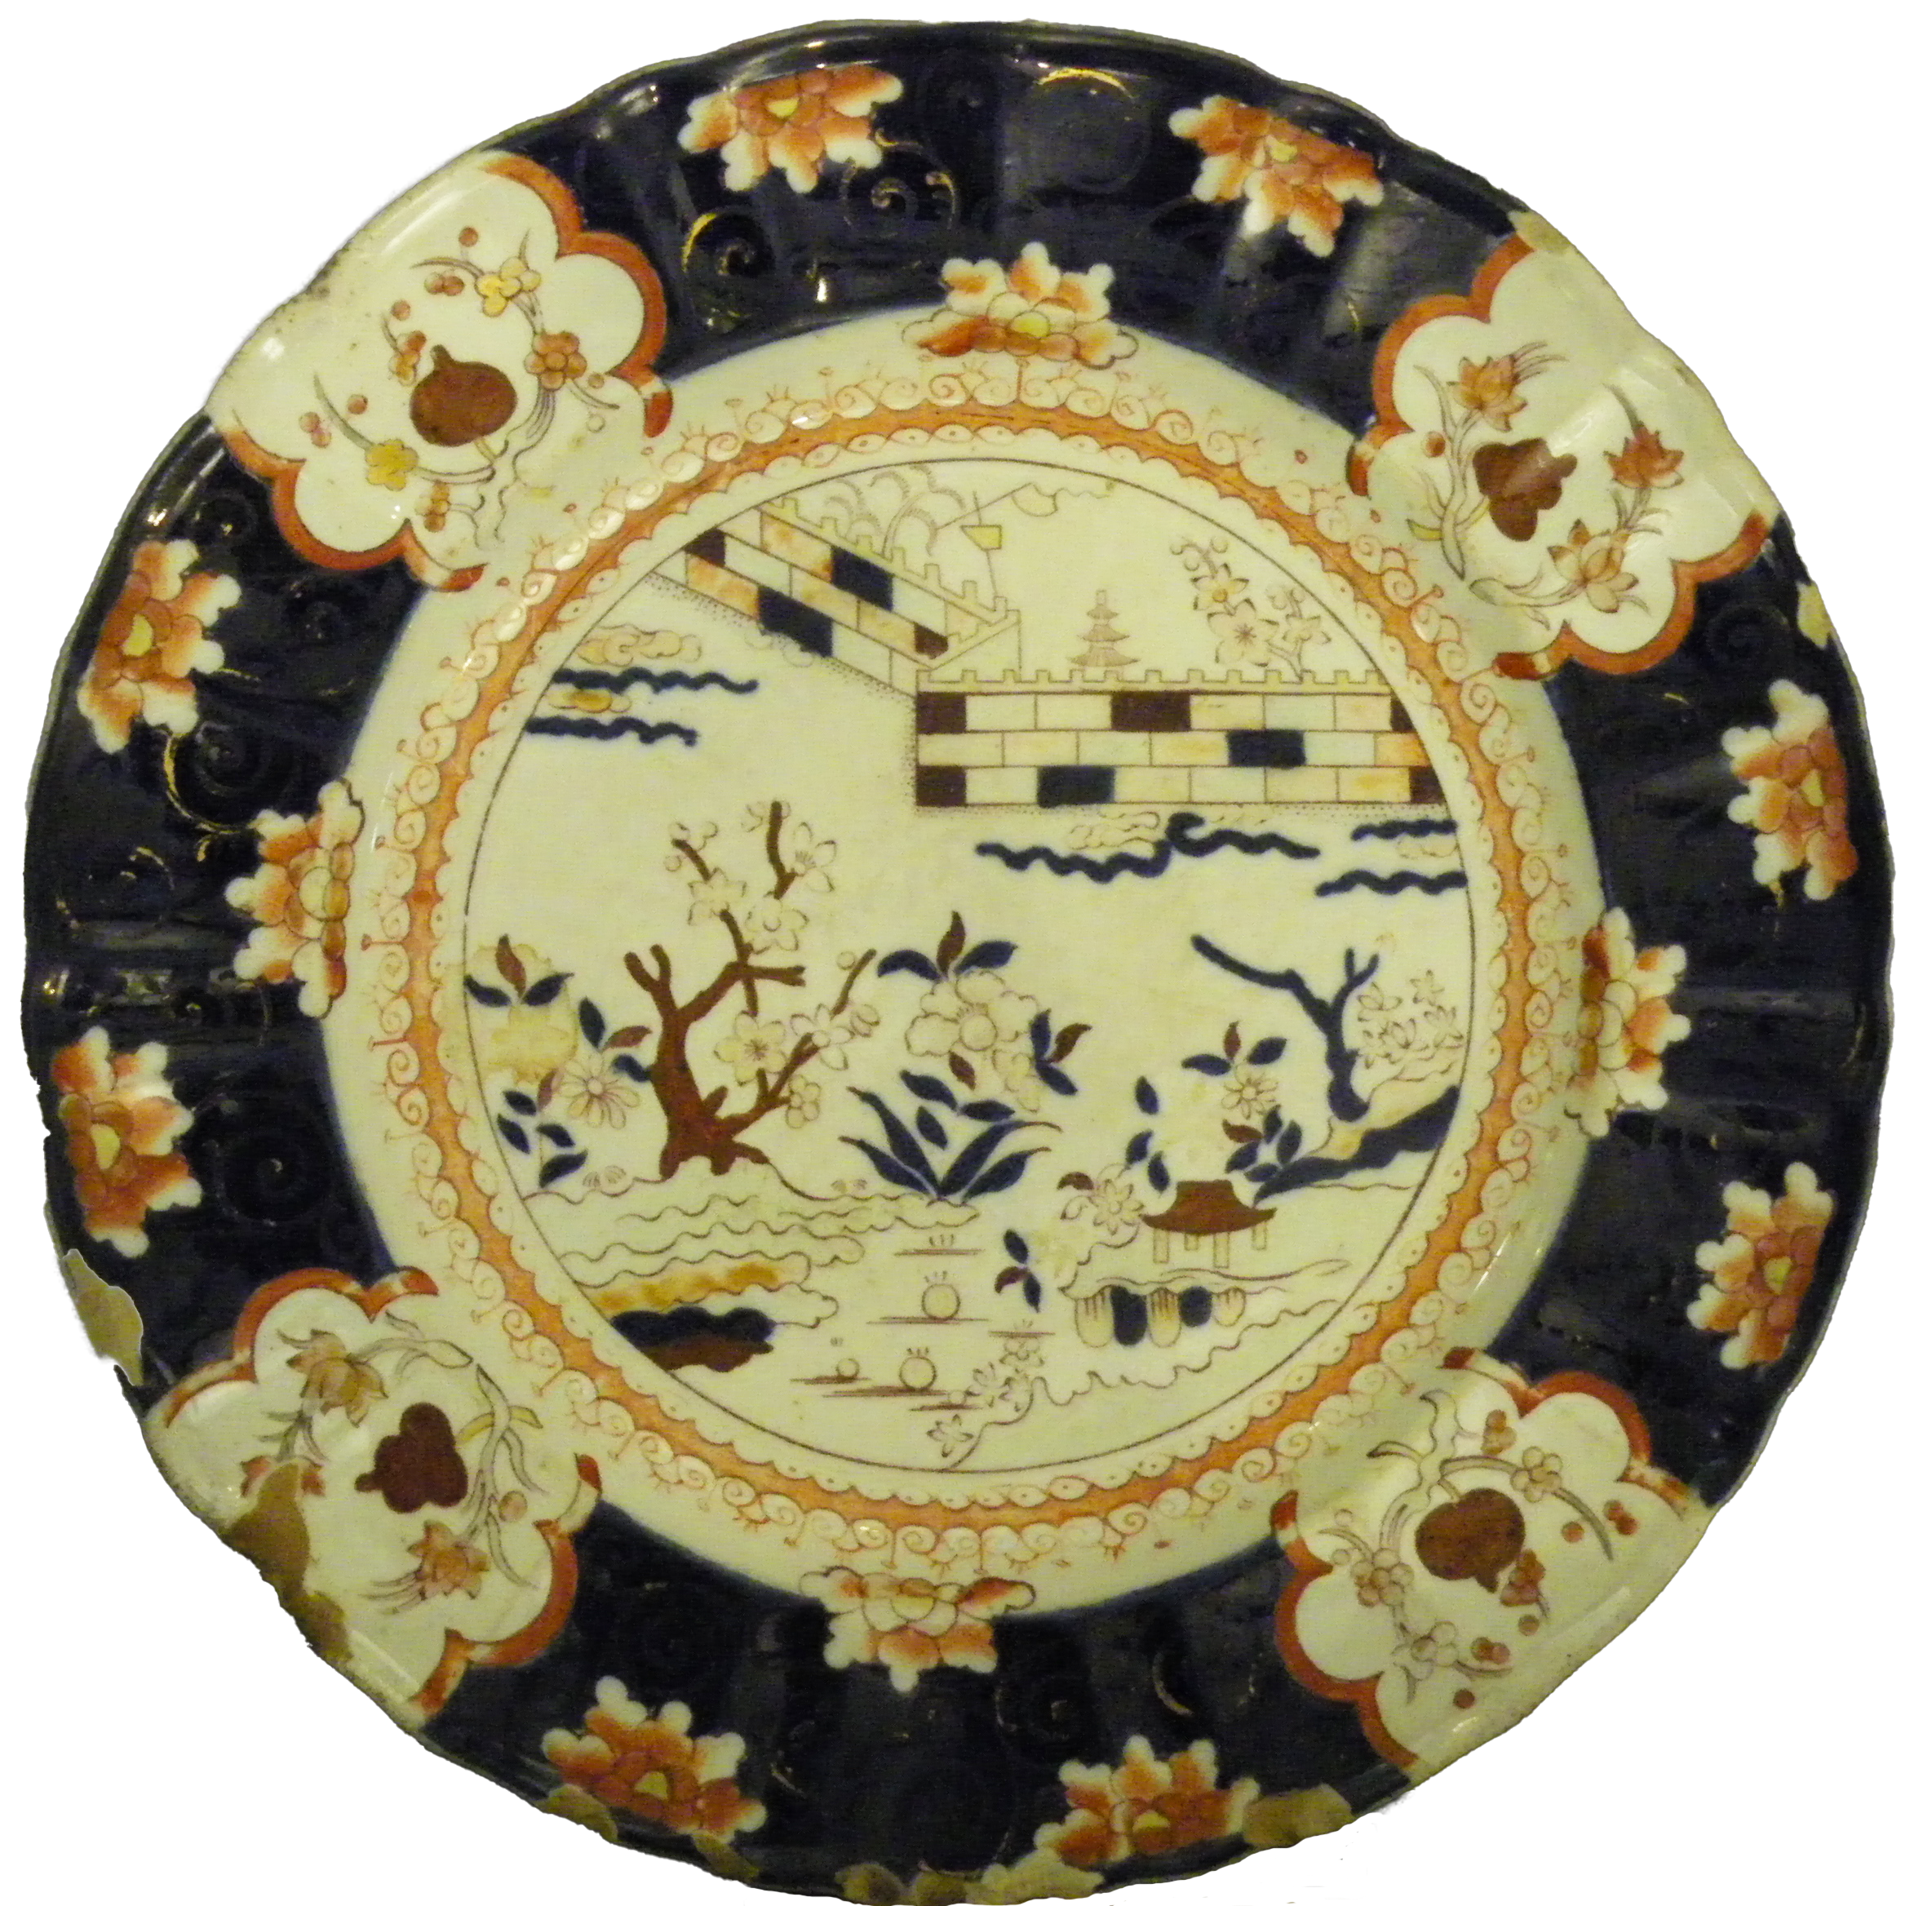 Ceramic dinner plate, around 1850 to 1890.